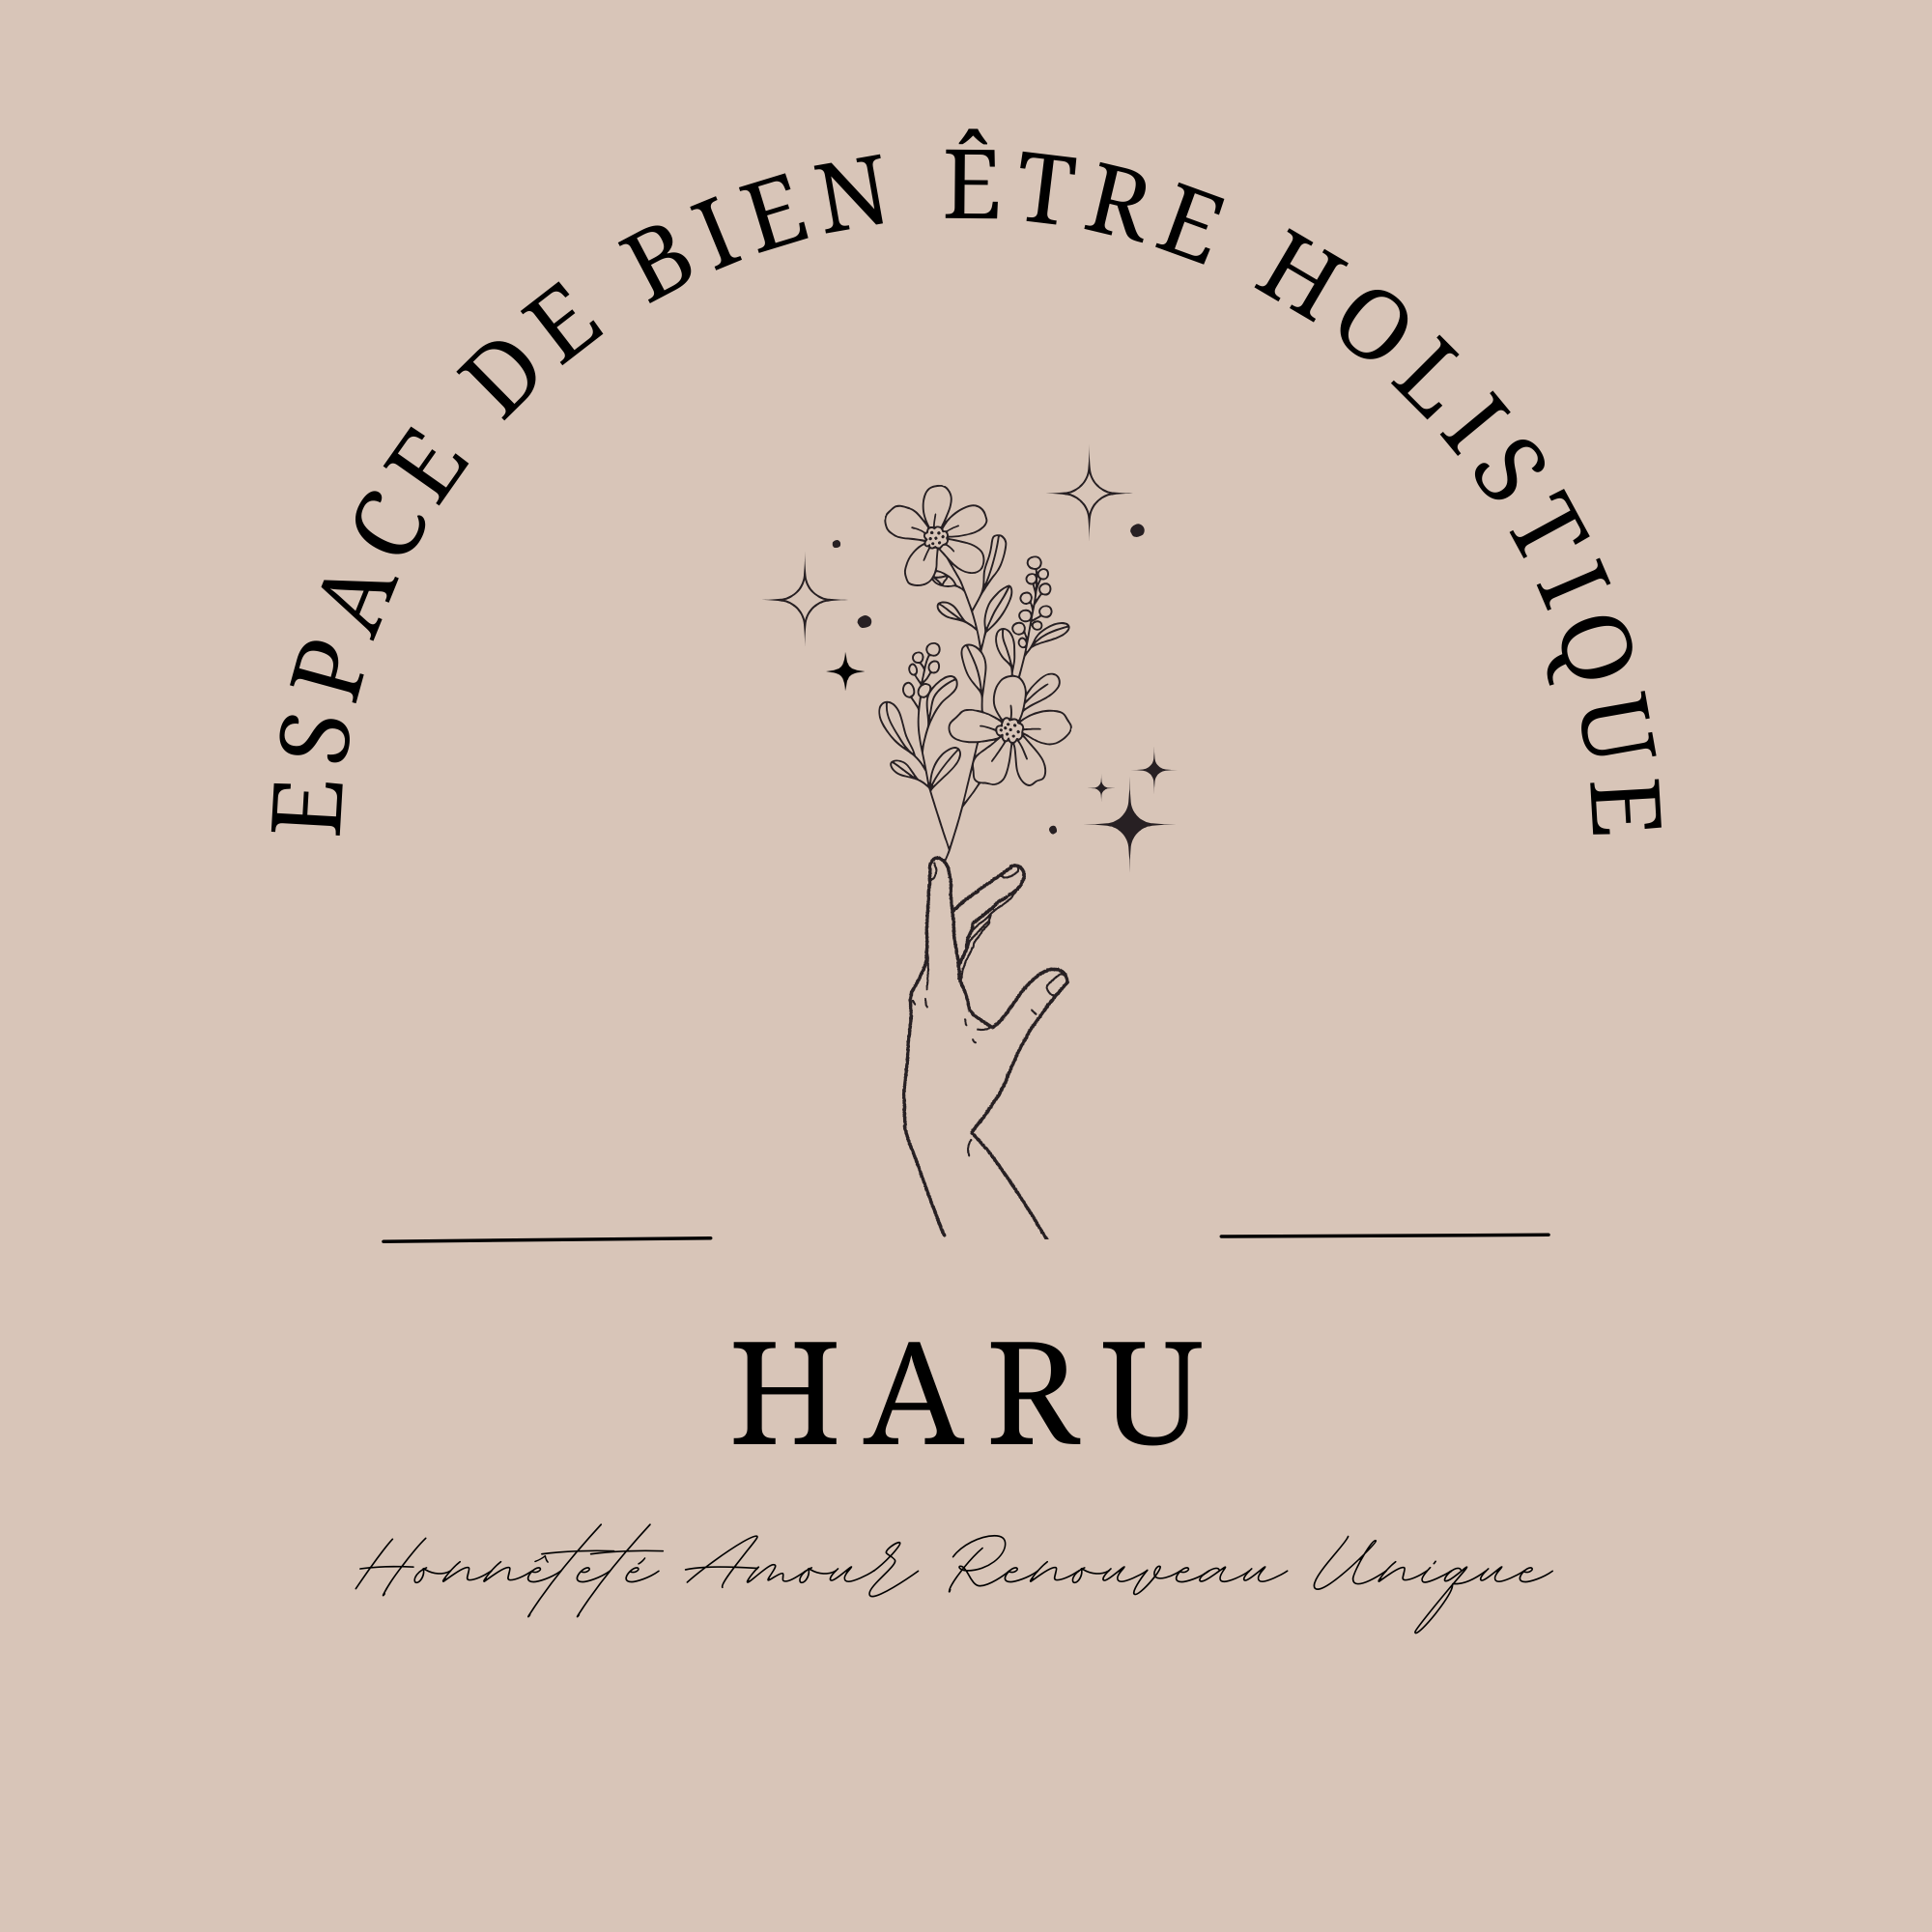 Logo HARU espace de bien être holistique, Honnêteté - Amour - Renouveau - Unique représente une main dont éclos une fleur évoquant l'évolution, le renouveau, et la magie intérieure